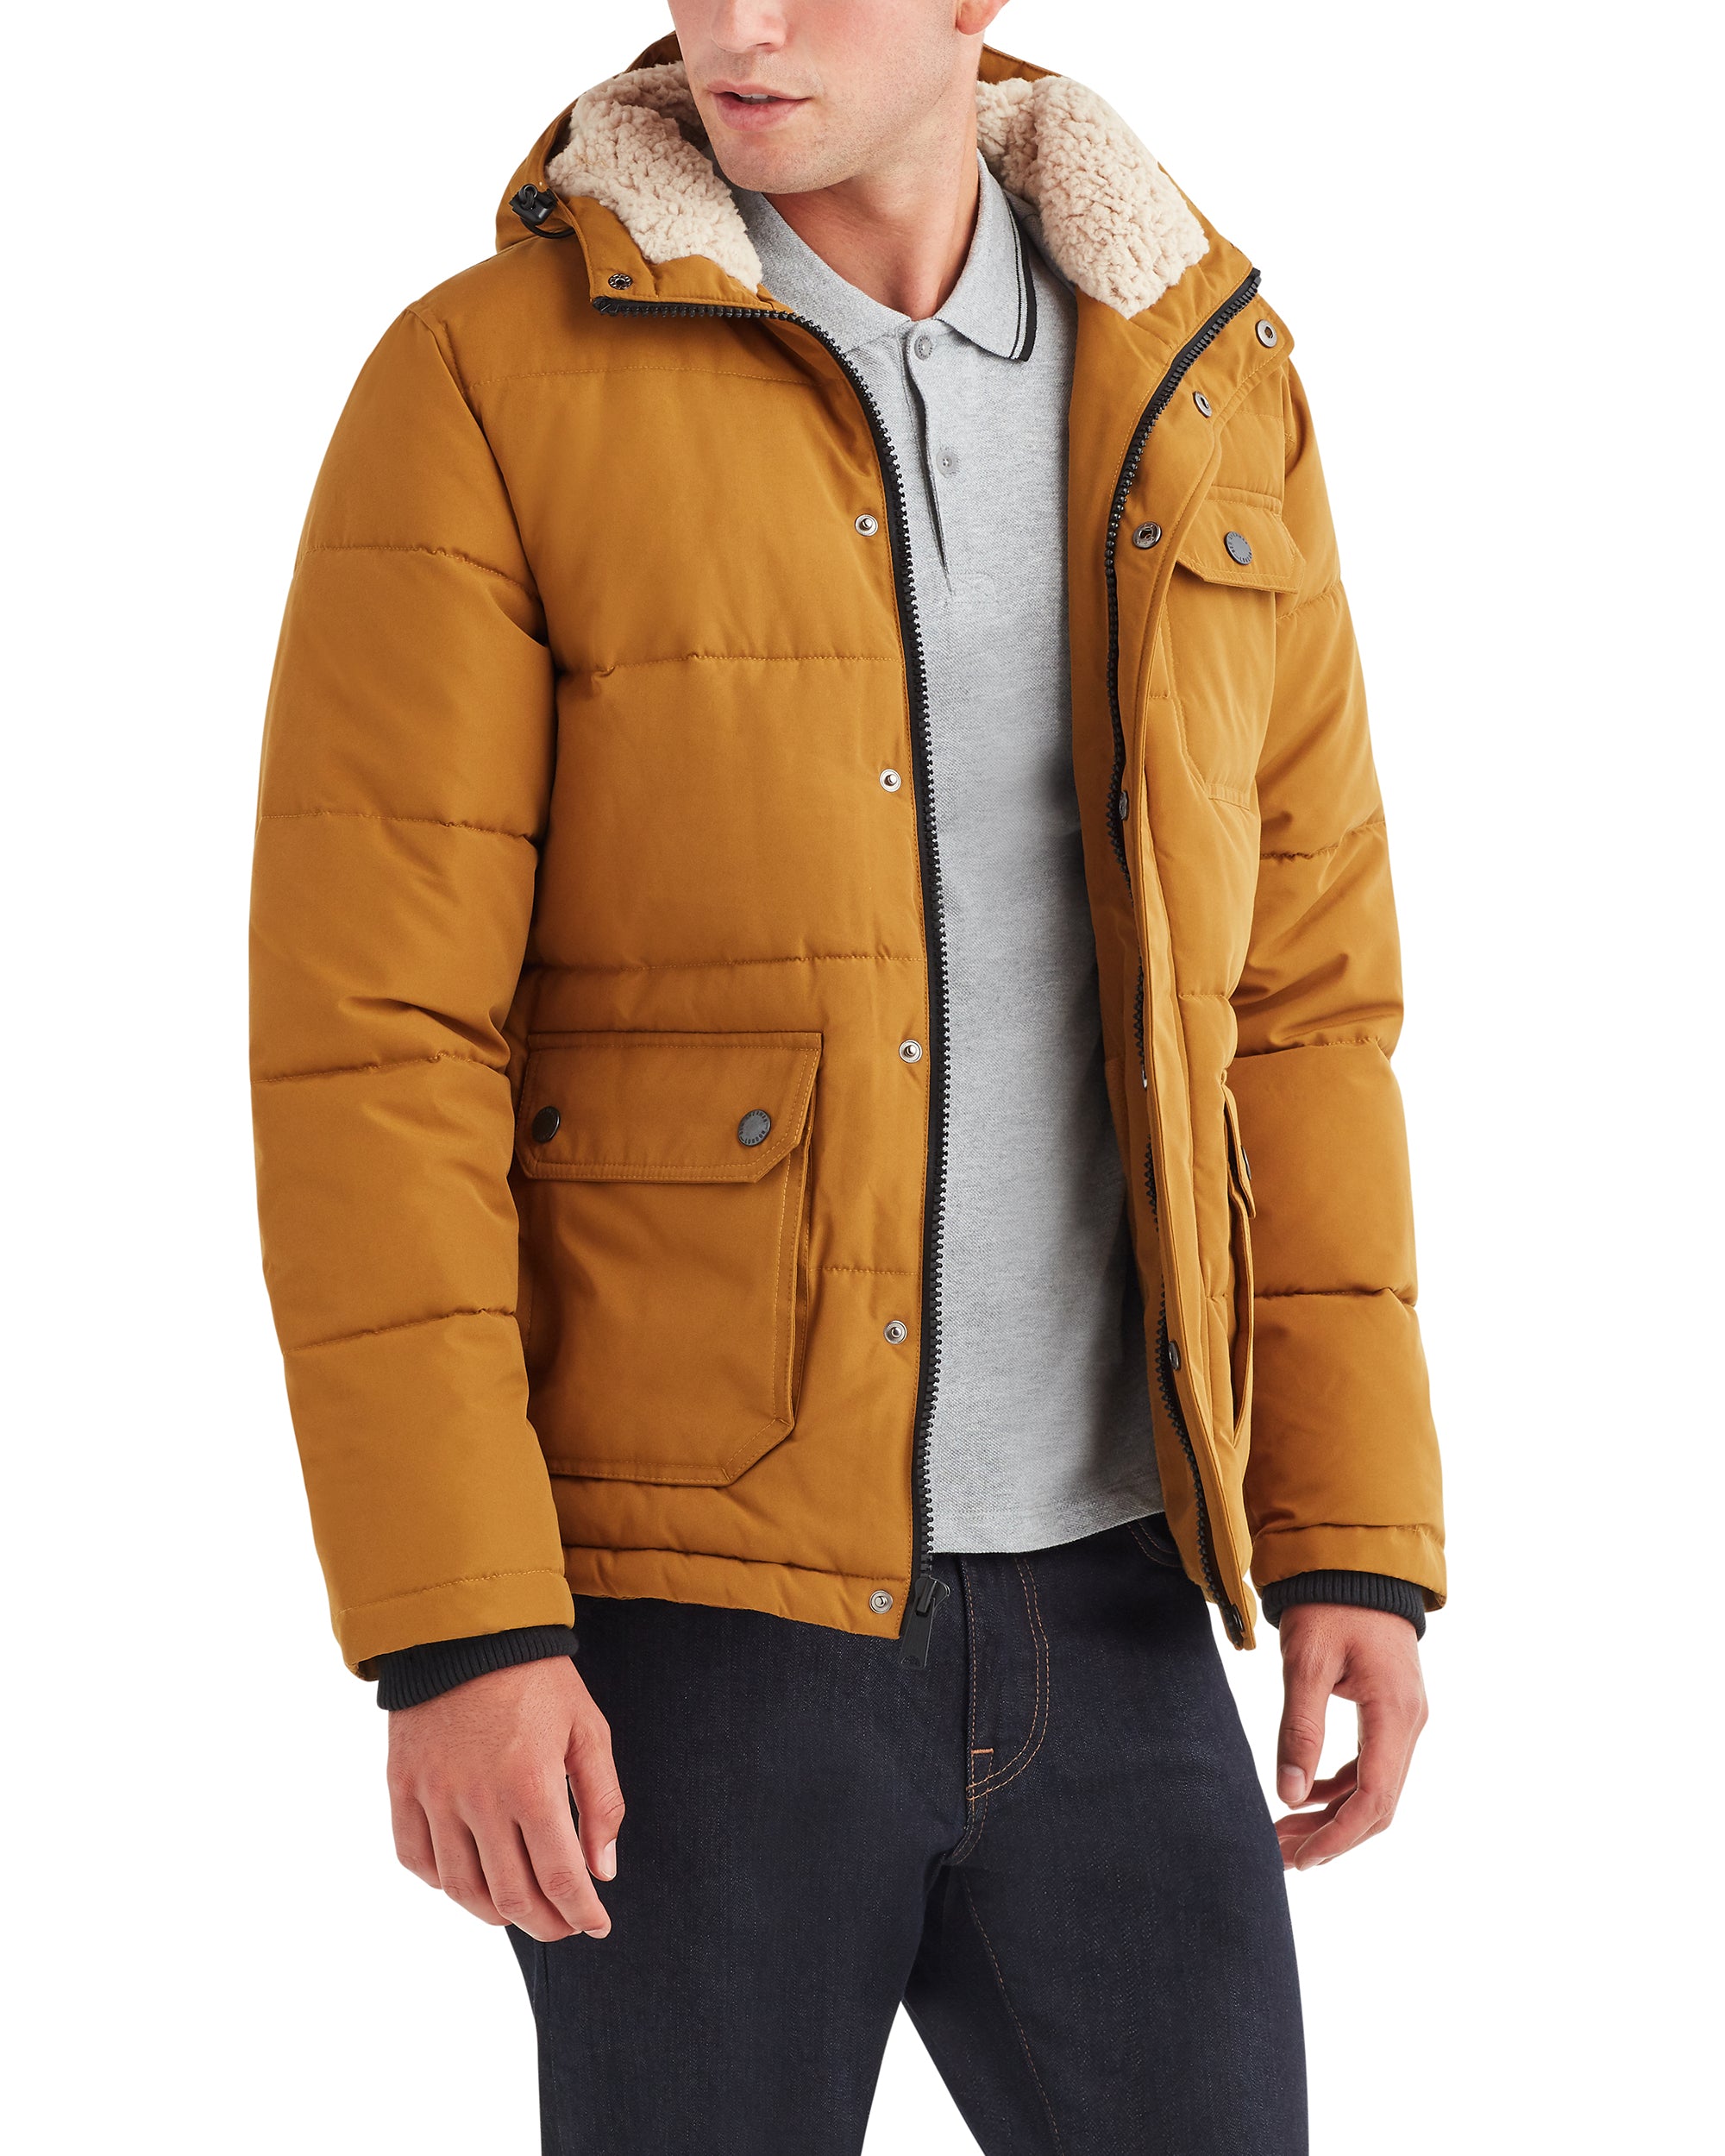 timberland jacket